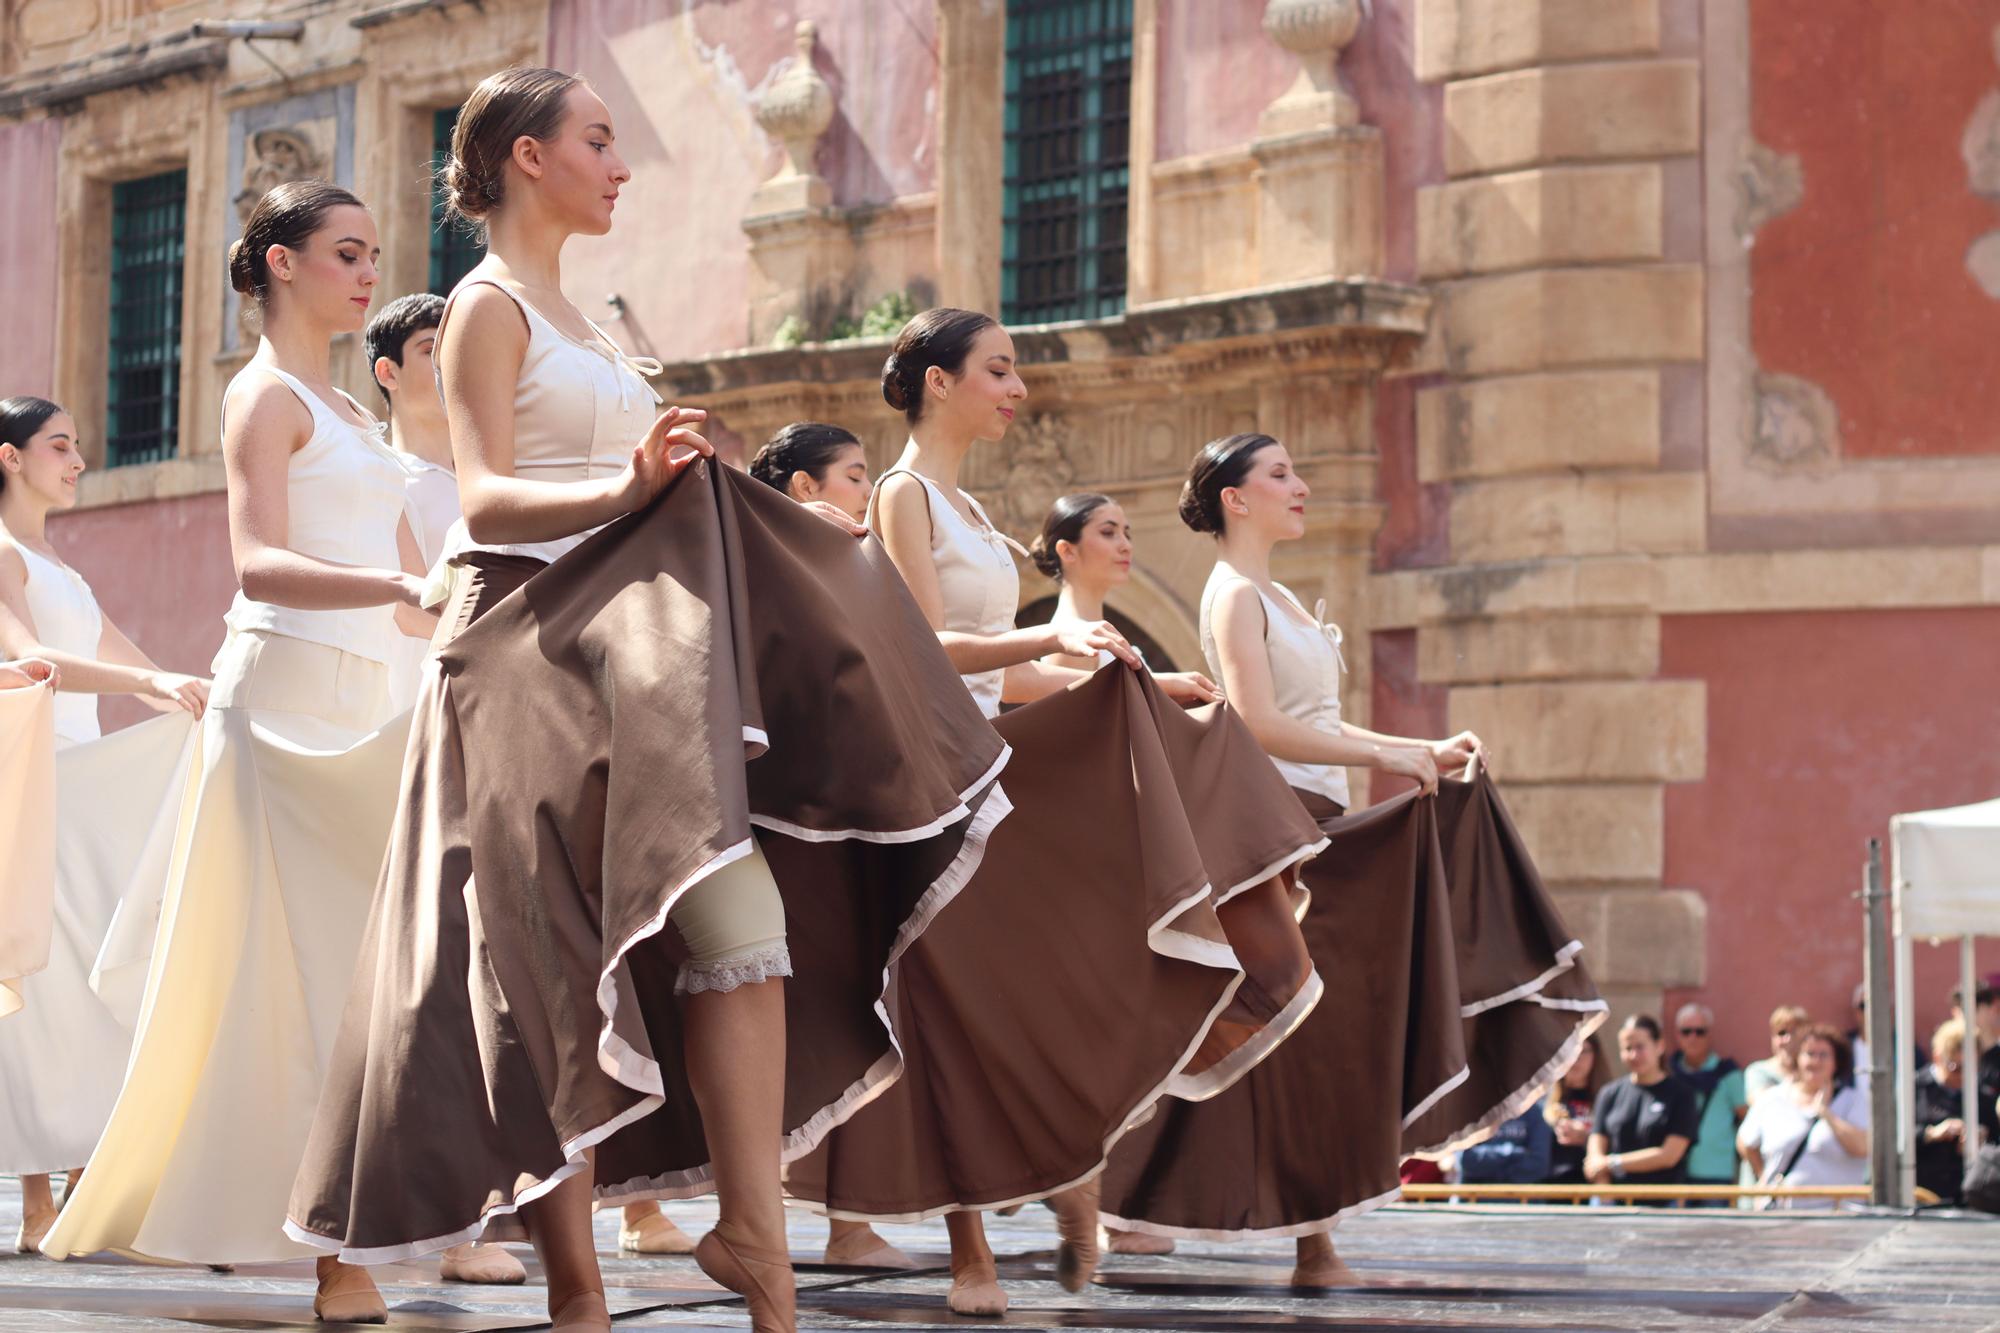 Exhibición de danza en la plaza Belluga de Murcia